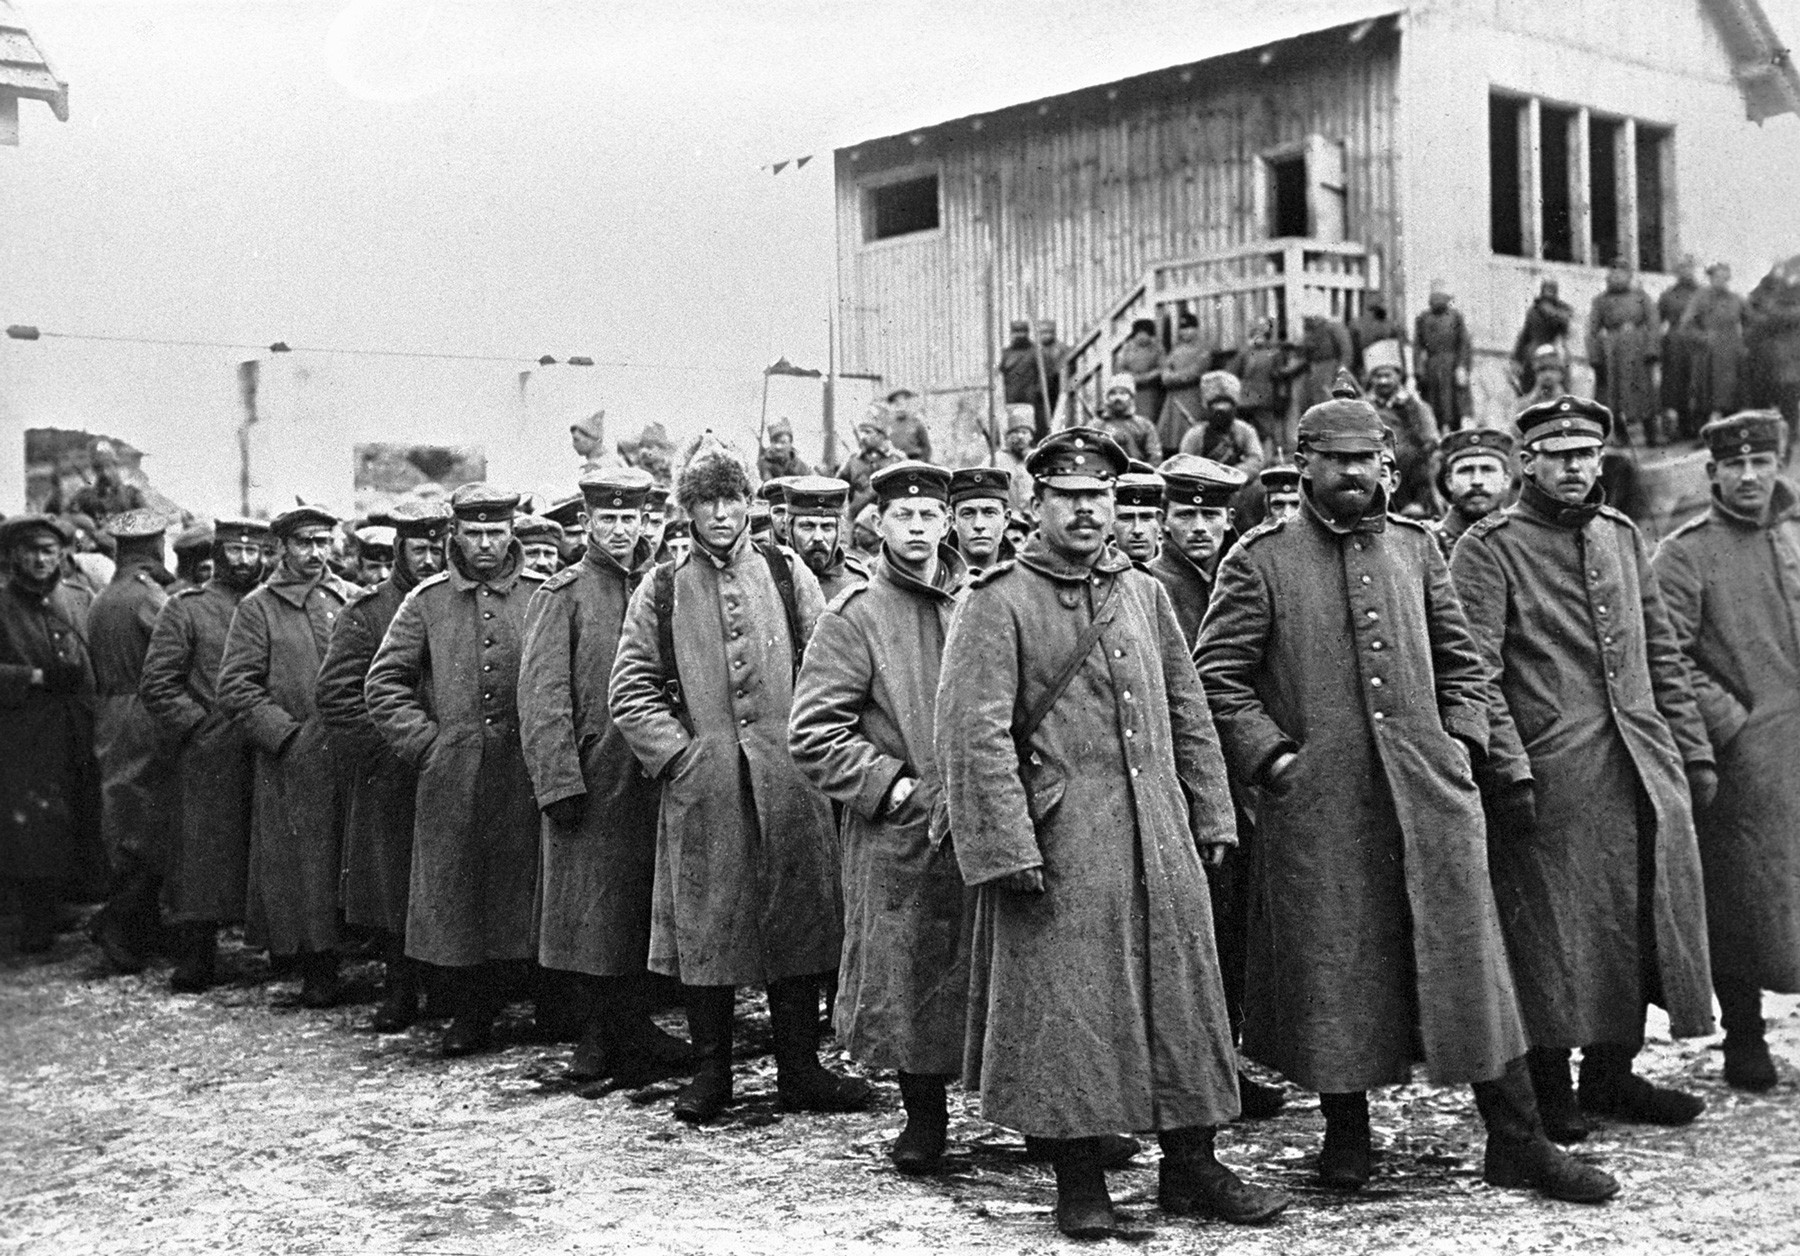 Naselje Naroč, Prvi svjetski rat (1914.-1918.)